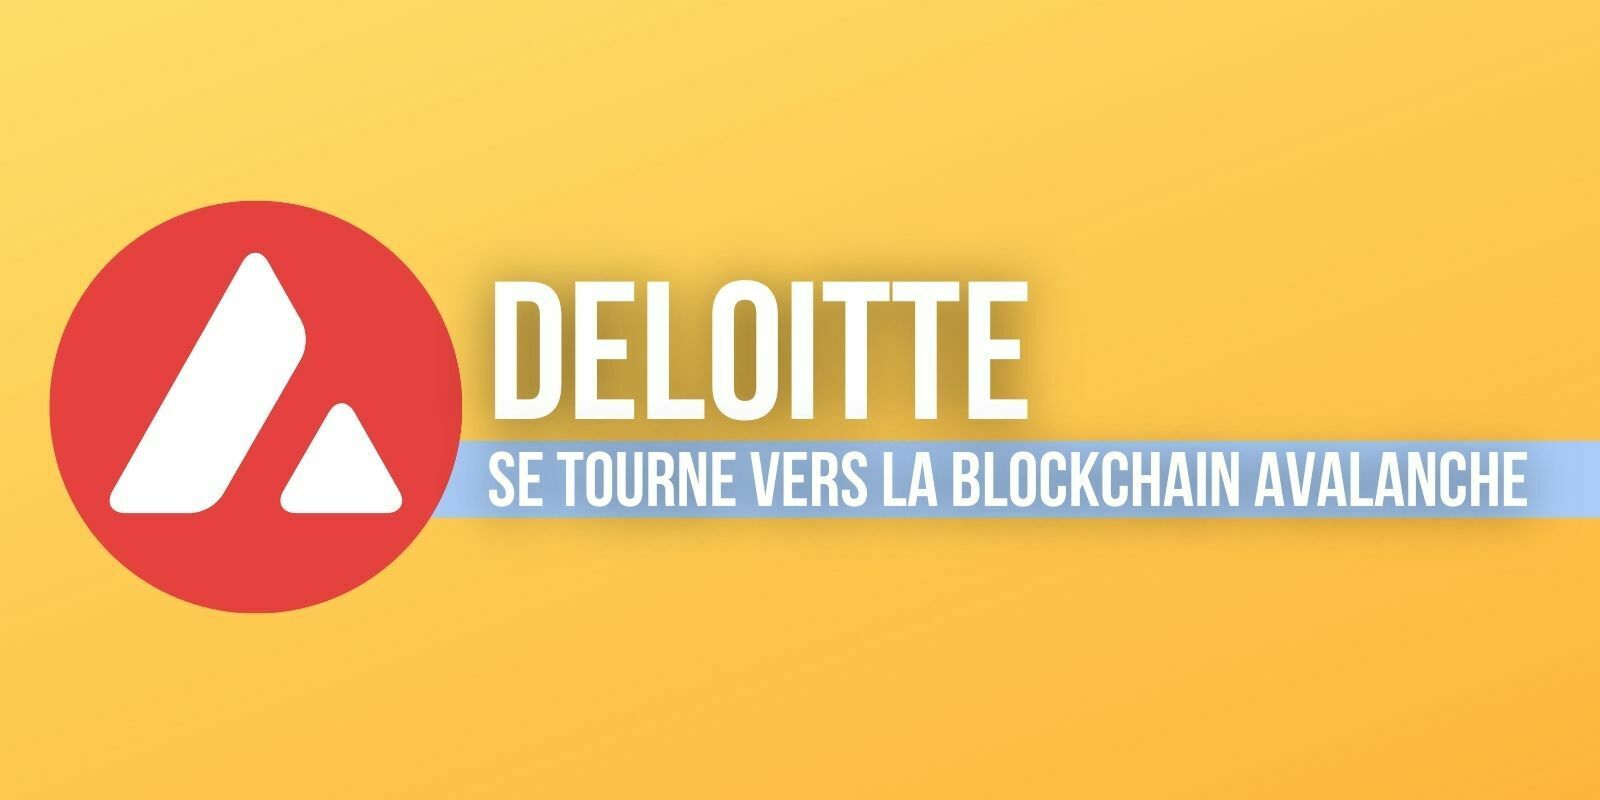 Deloitte va utiliser la blockchain Avalanche (AVAX) pour accélérer les remboursements après un sinistre